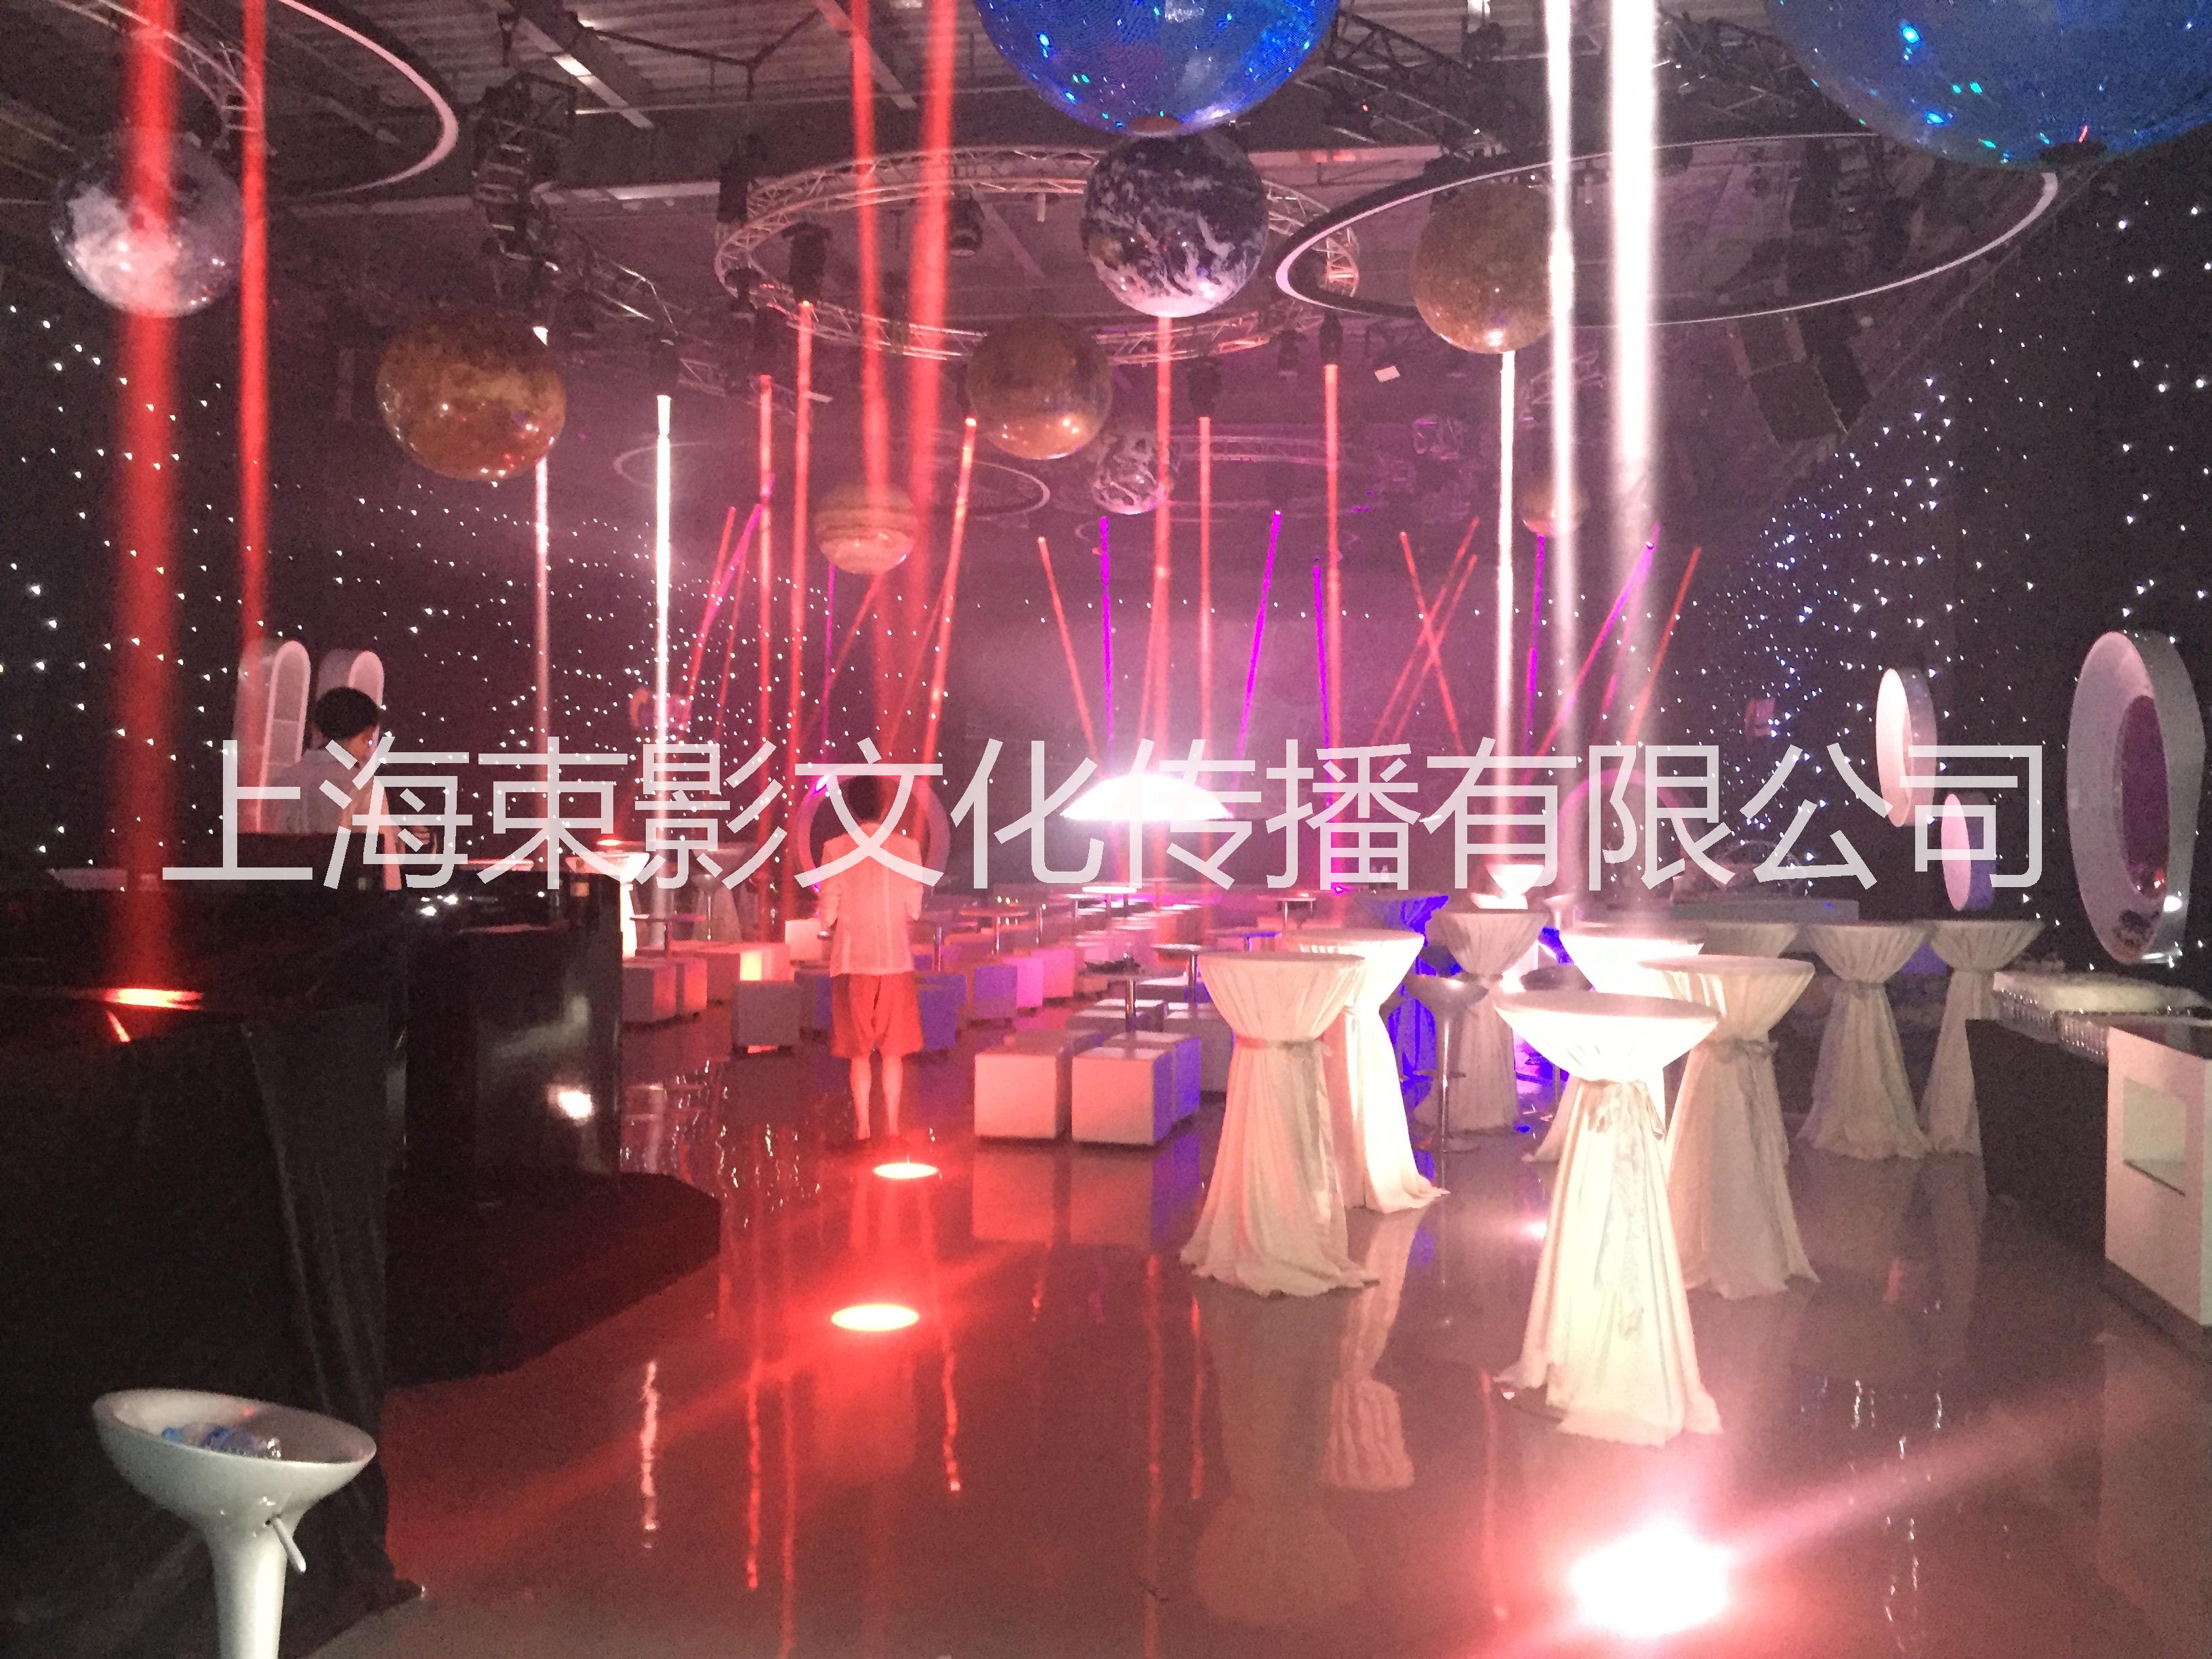 上海LED大屏租赁公司 上海LED大屏租赁公司灯光音响